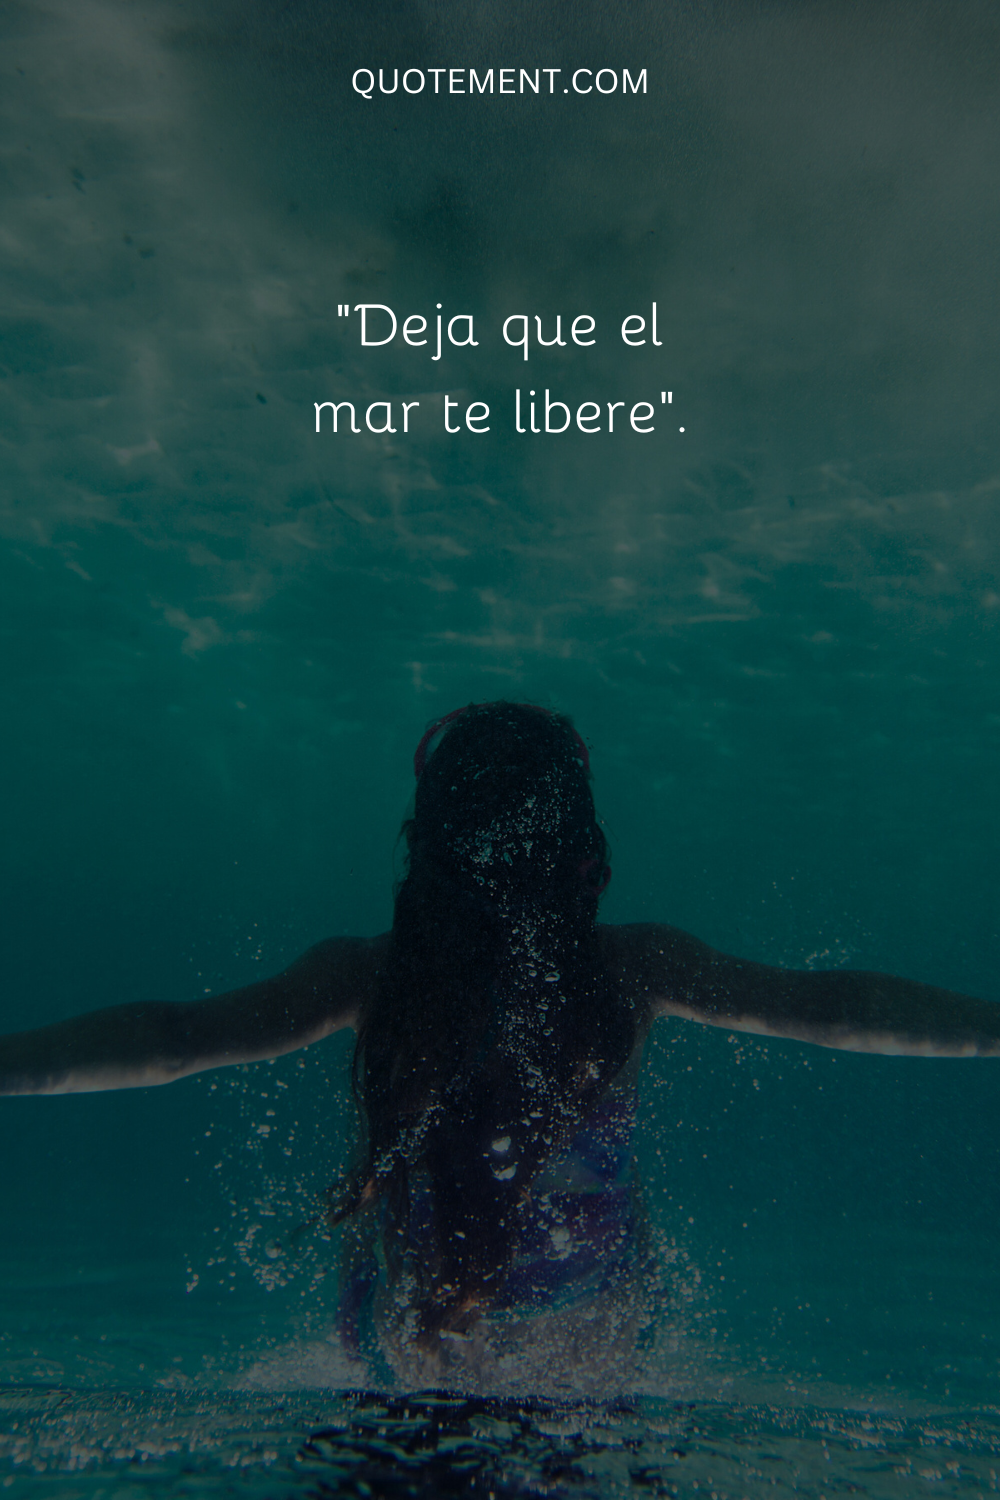 "Deja que el mar te libere".